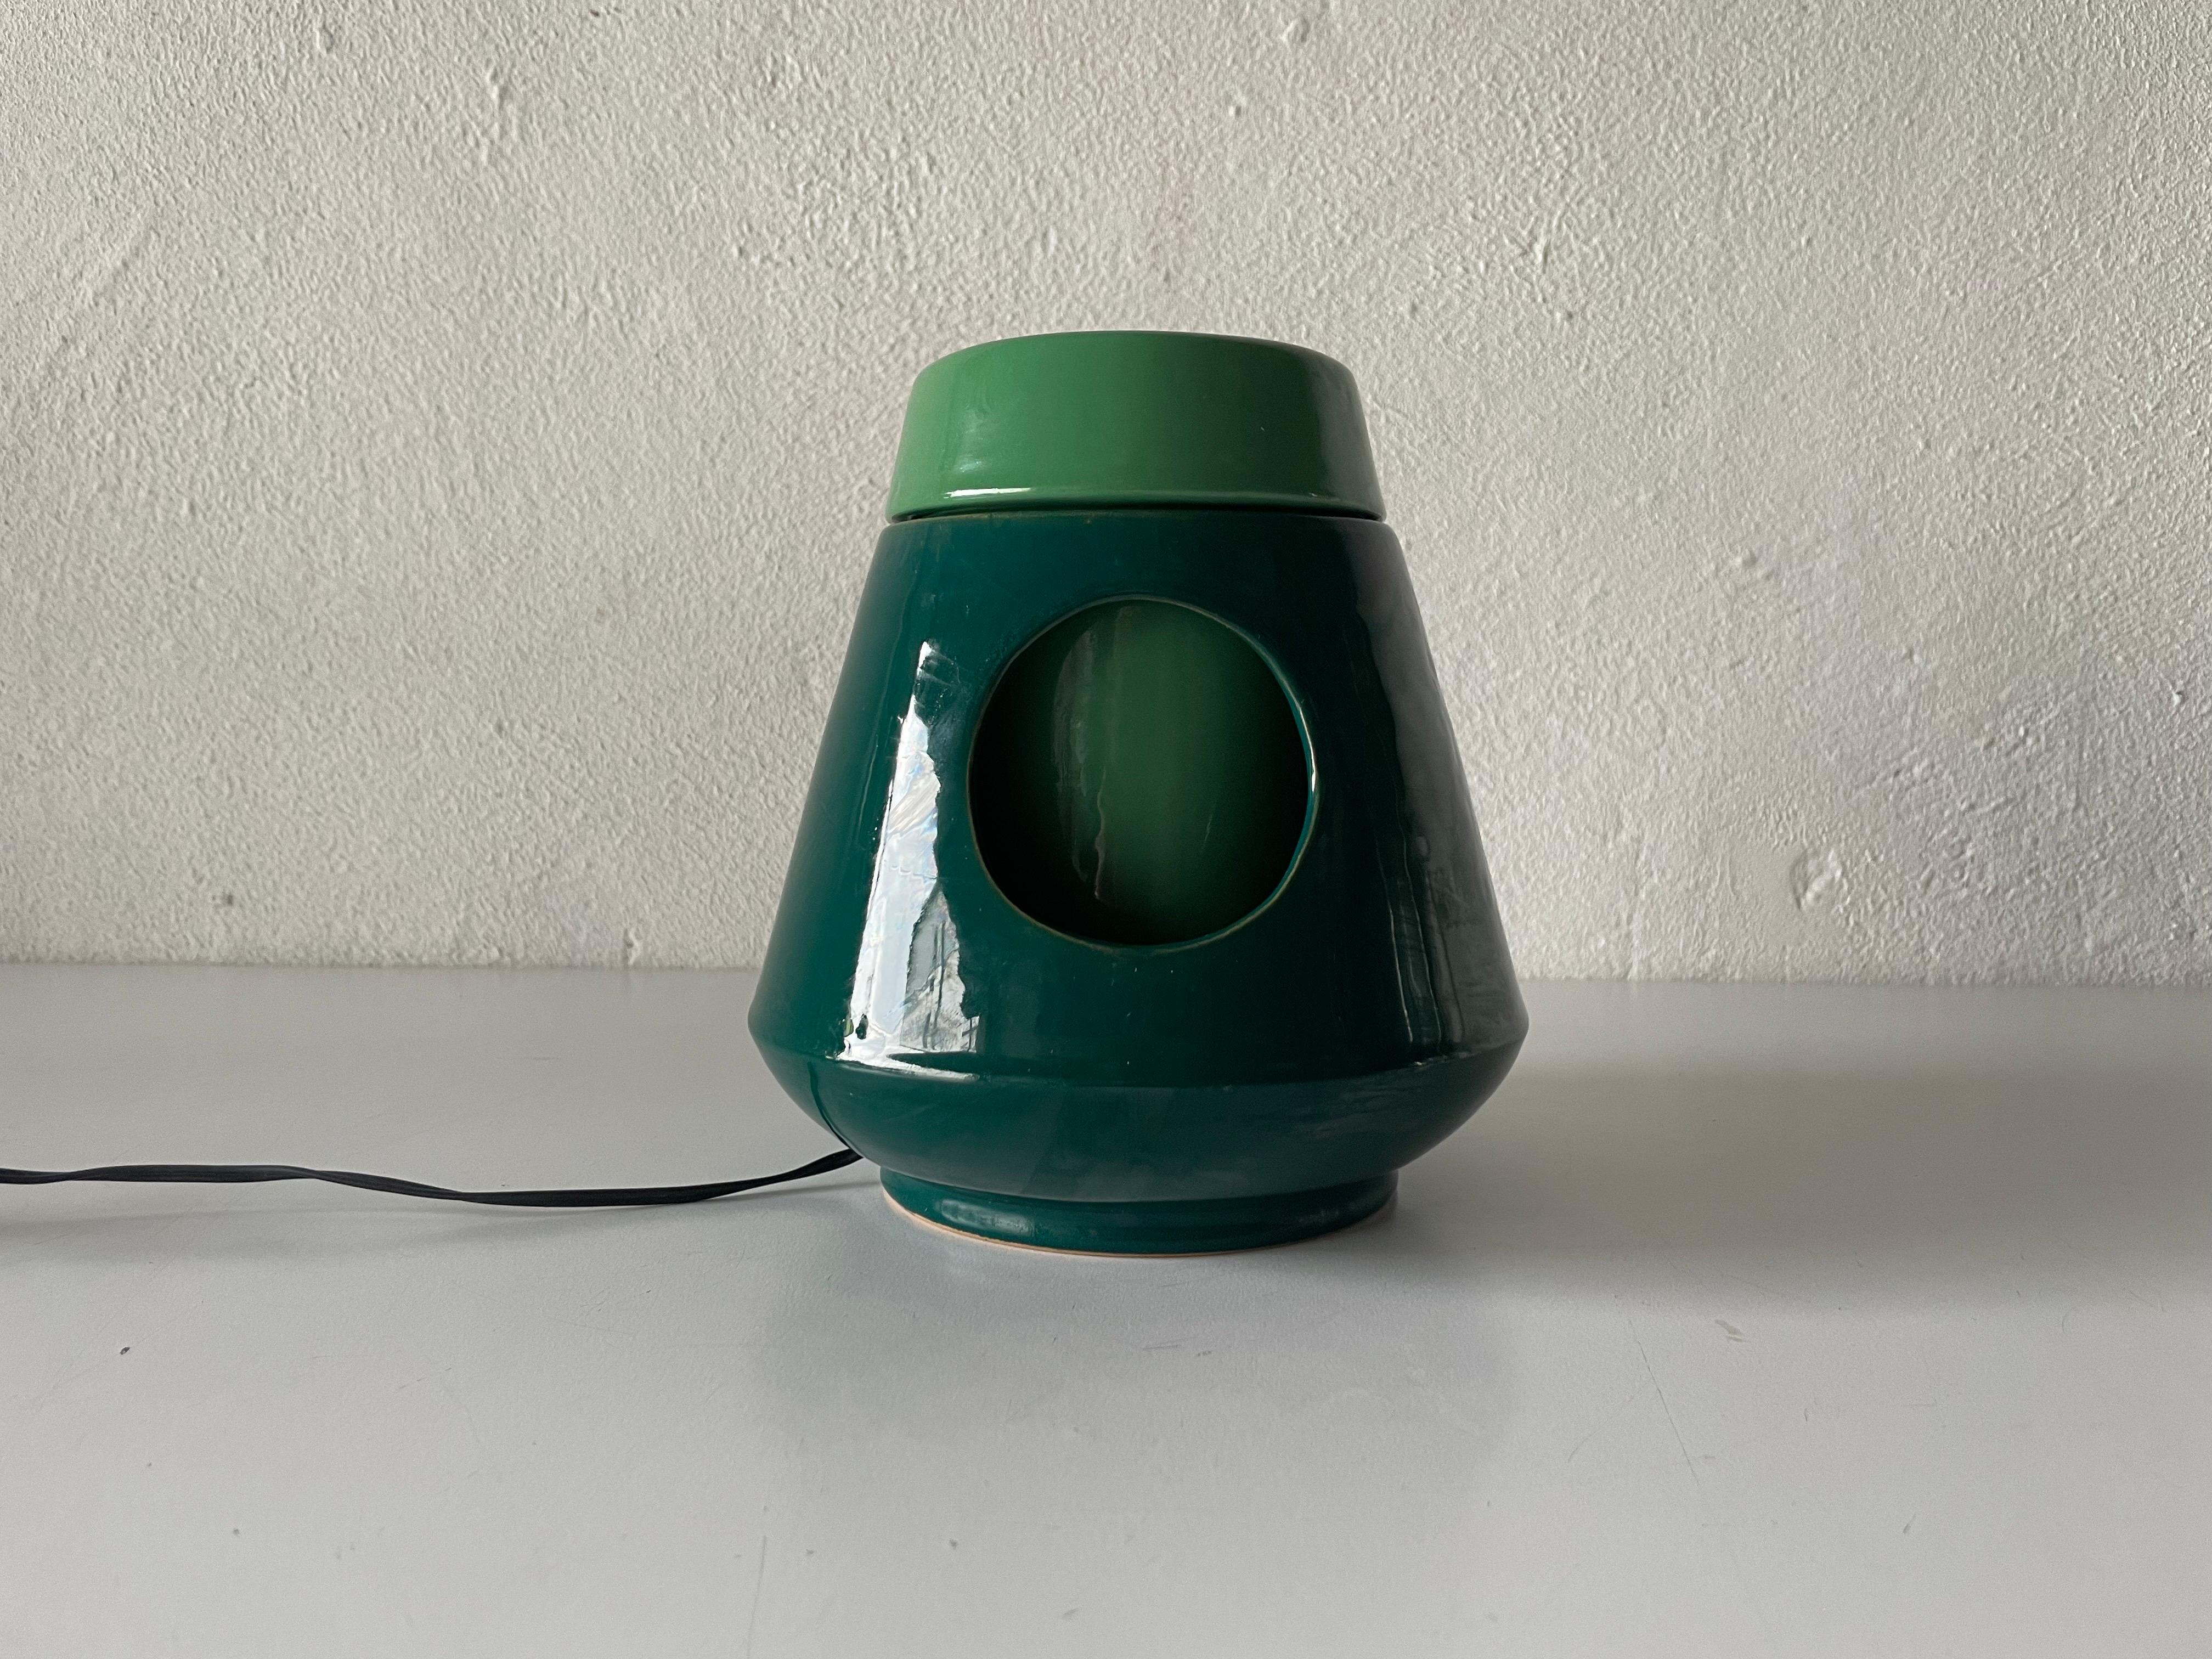 Lampe de table pivotante en céramique verte, années 1960, Italie.

L'abat-jour est en bon état et très propre. 
Cette lampe fonctionne avec une ampoule E14
Câblé et adapté à une utilisation avec 220V et 110V pour tous les pays.

Mesures :